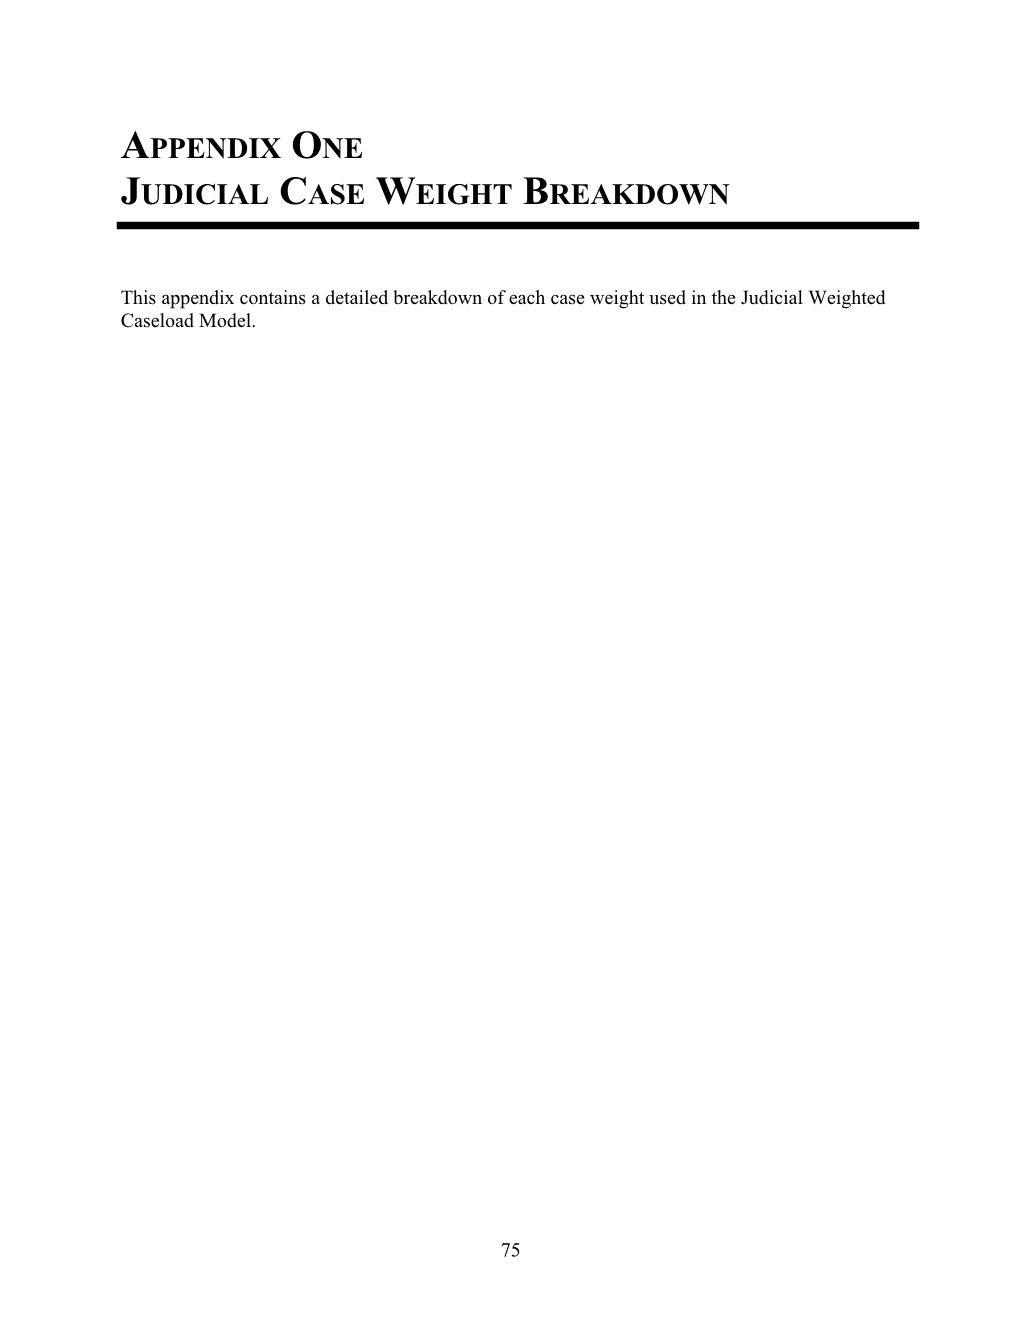 Appendix 1. 2007 Judicial Case Weight Breakdown